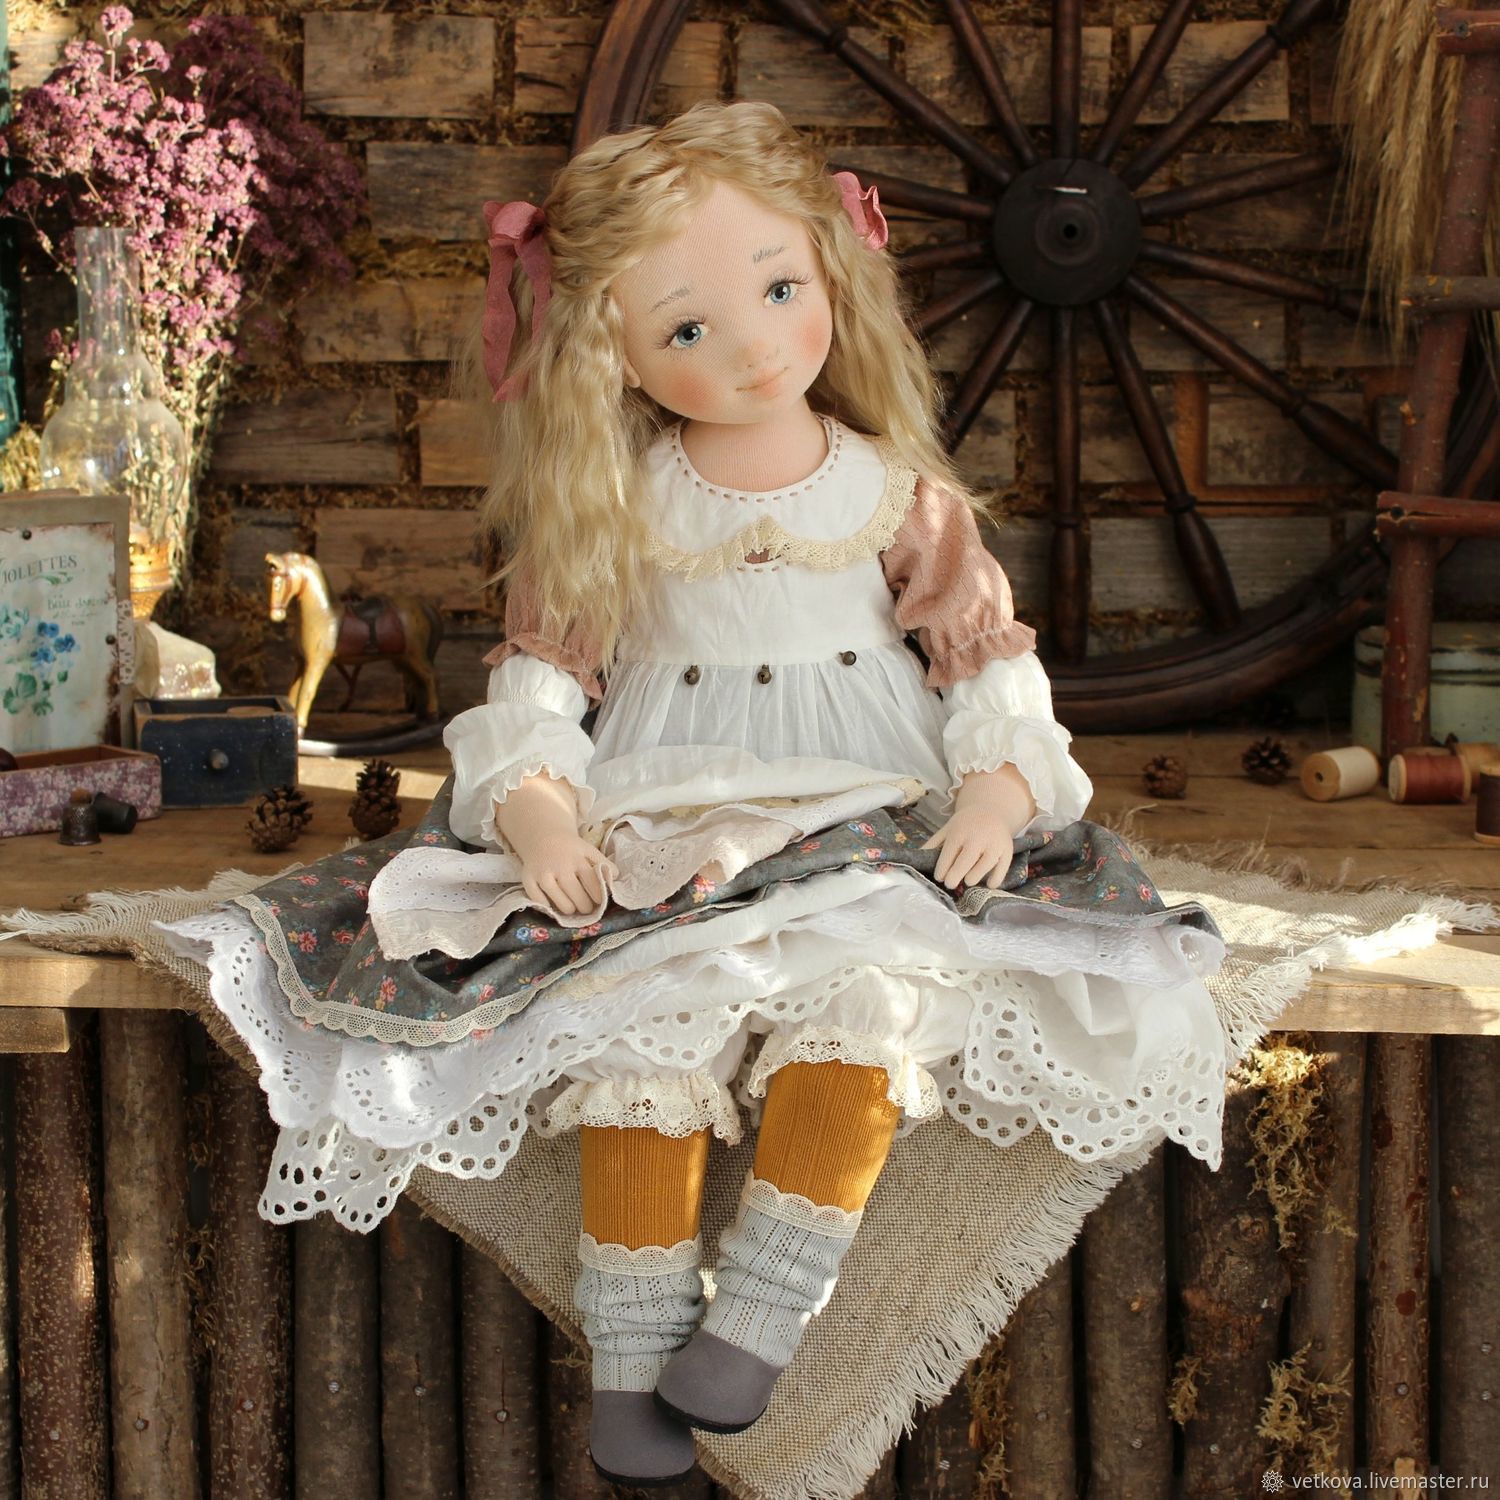 Autumn doll